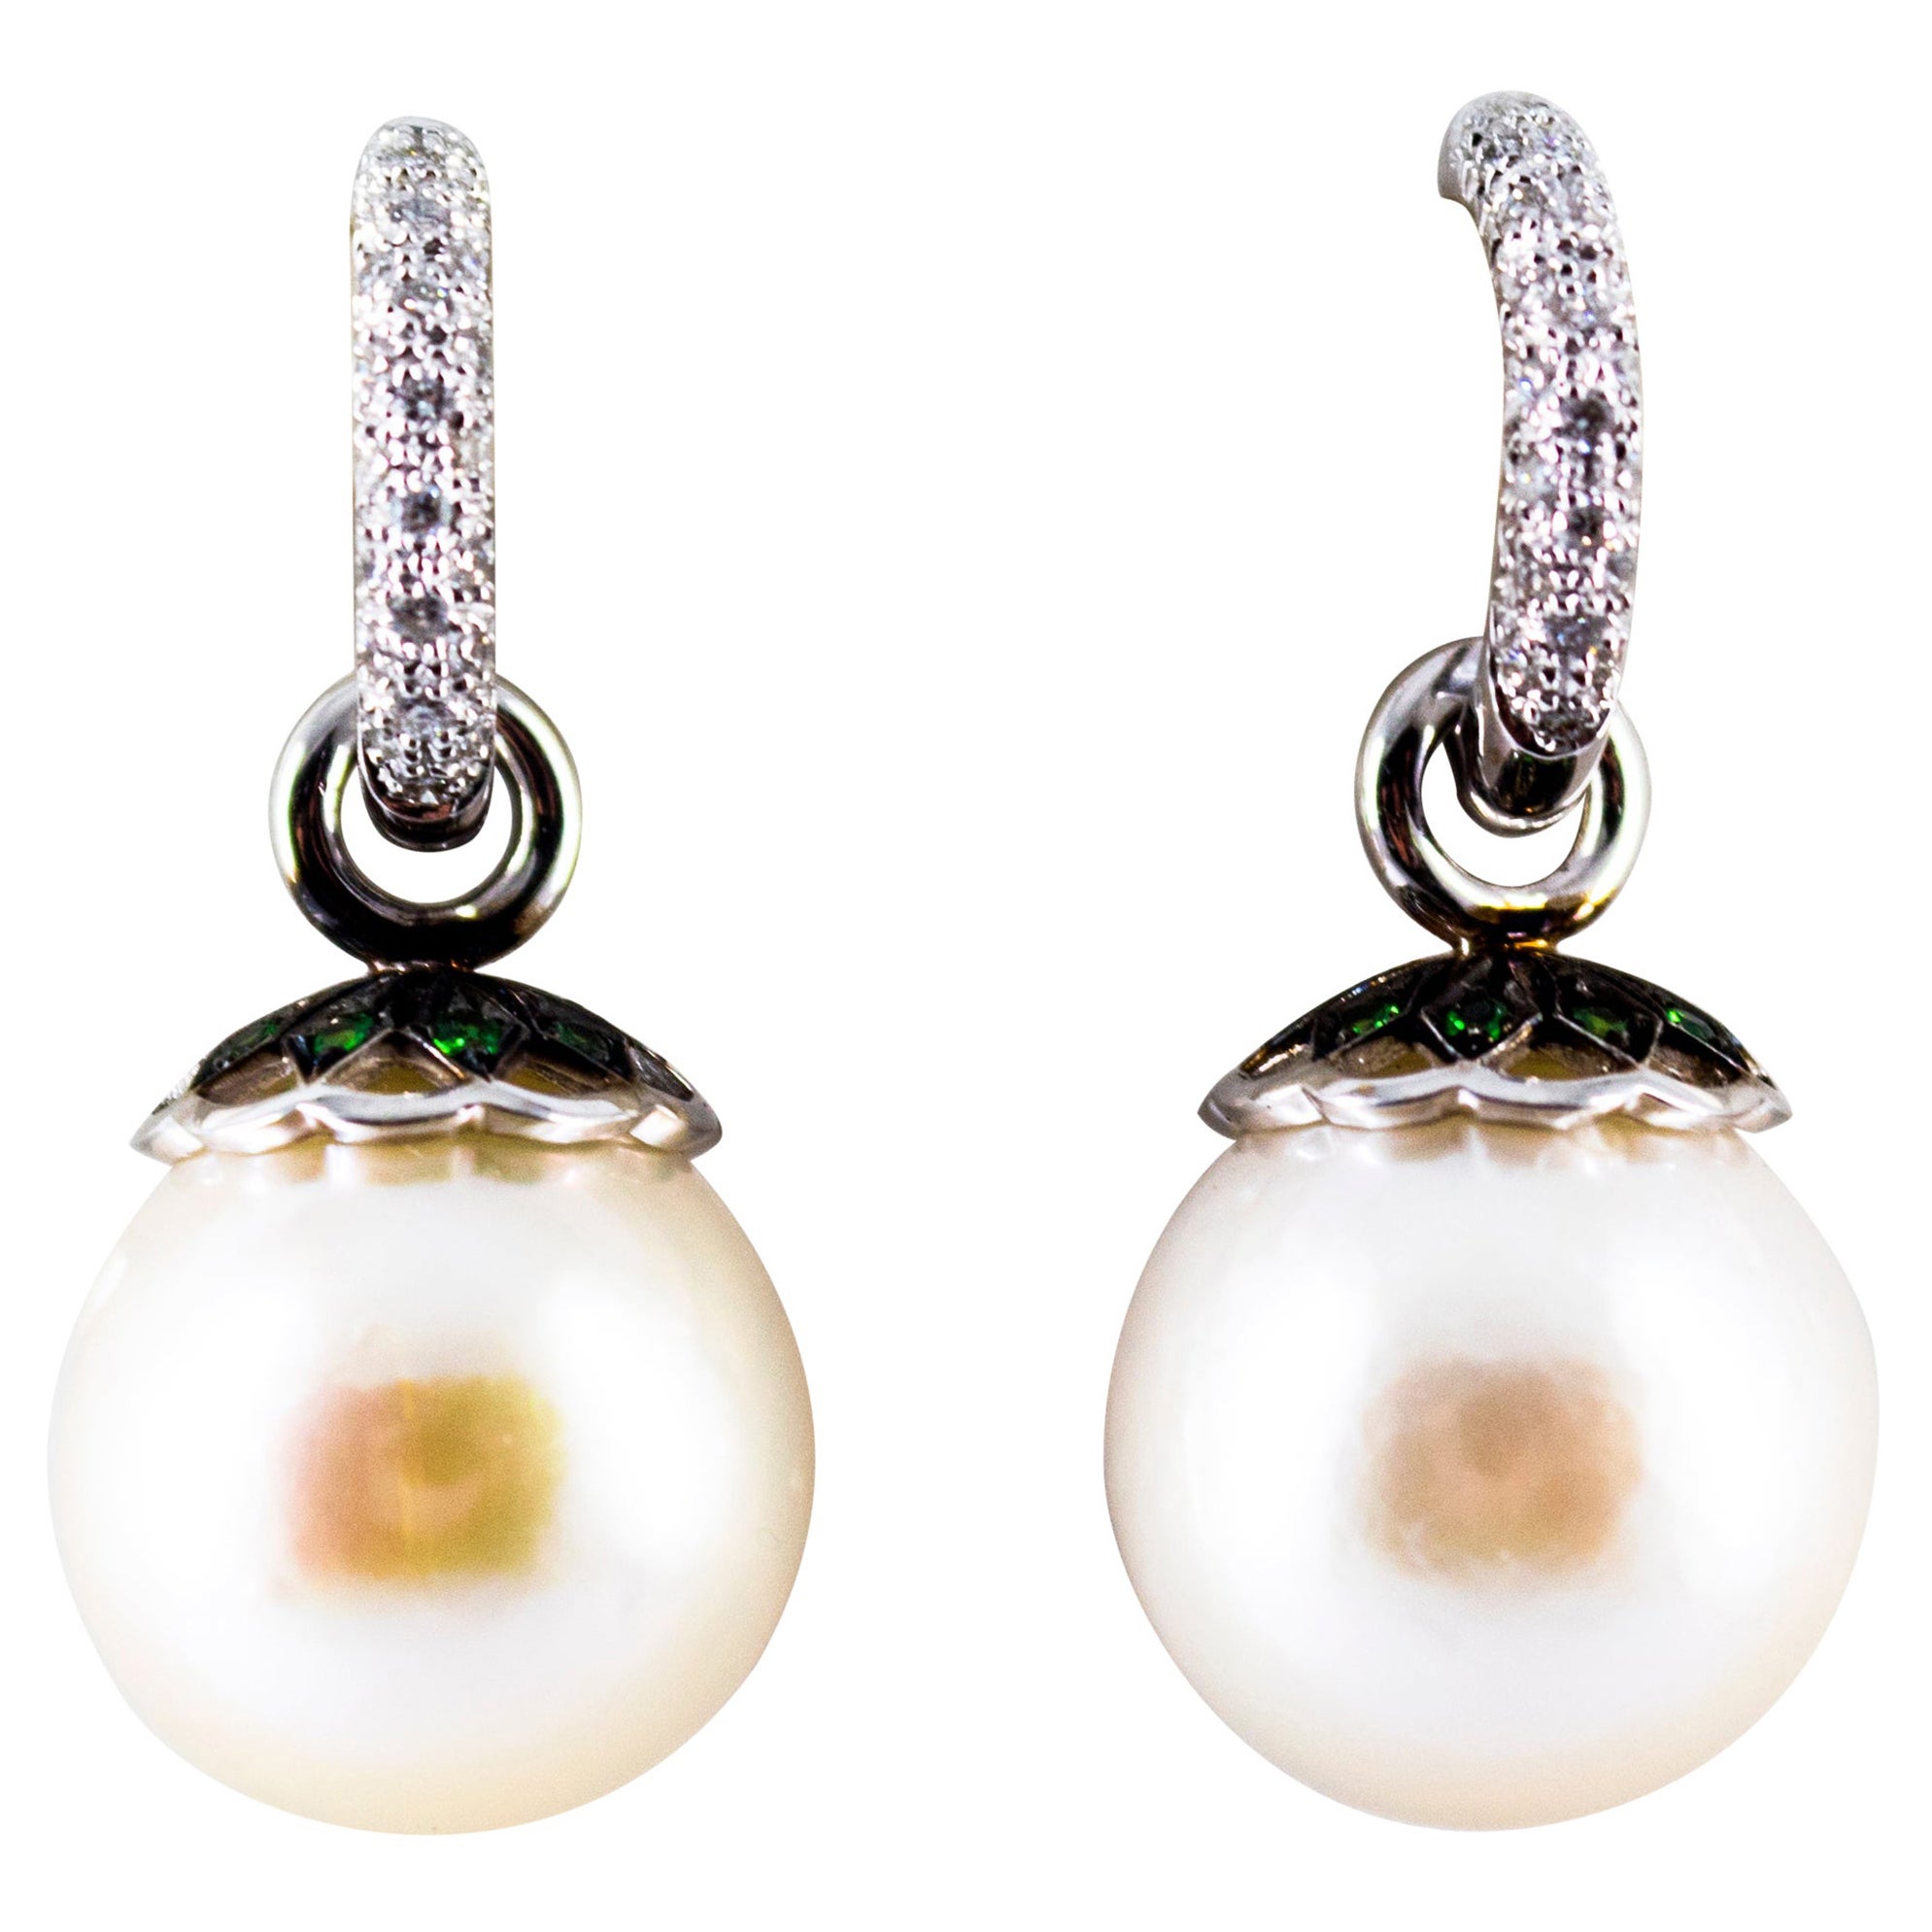 Pendants d'oreilles Art Nouveau en or blanc avec diamant blanc 0,55 carat, émeraude et perle